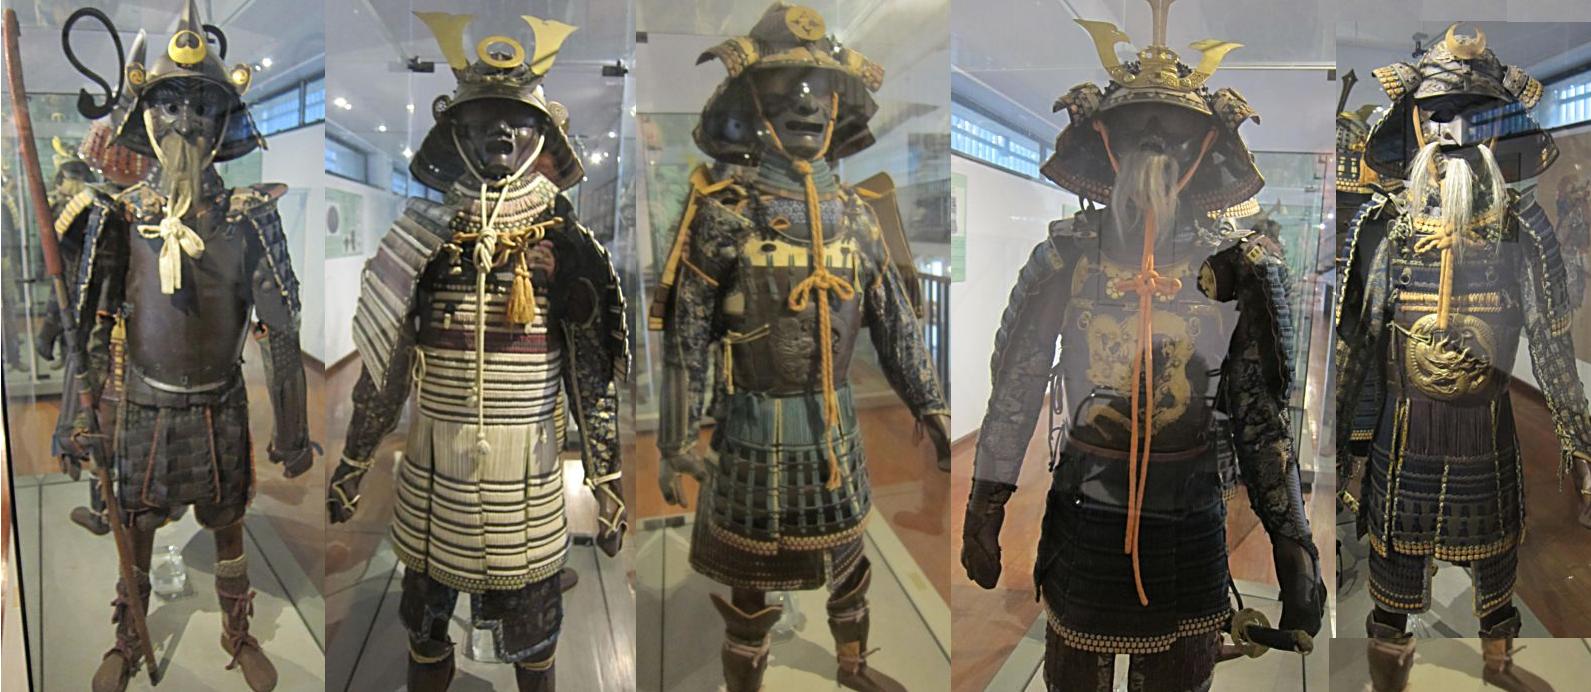 Самураи в средневековой Японии. Выставка макетов в музее Востока в Генуи.   Фото Лимарева В.Н.